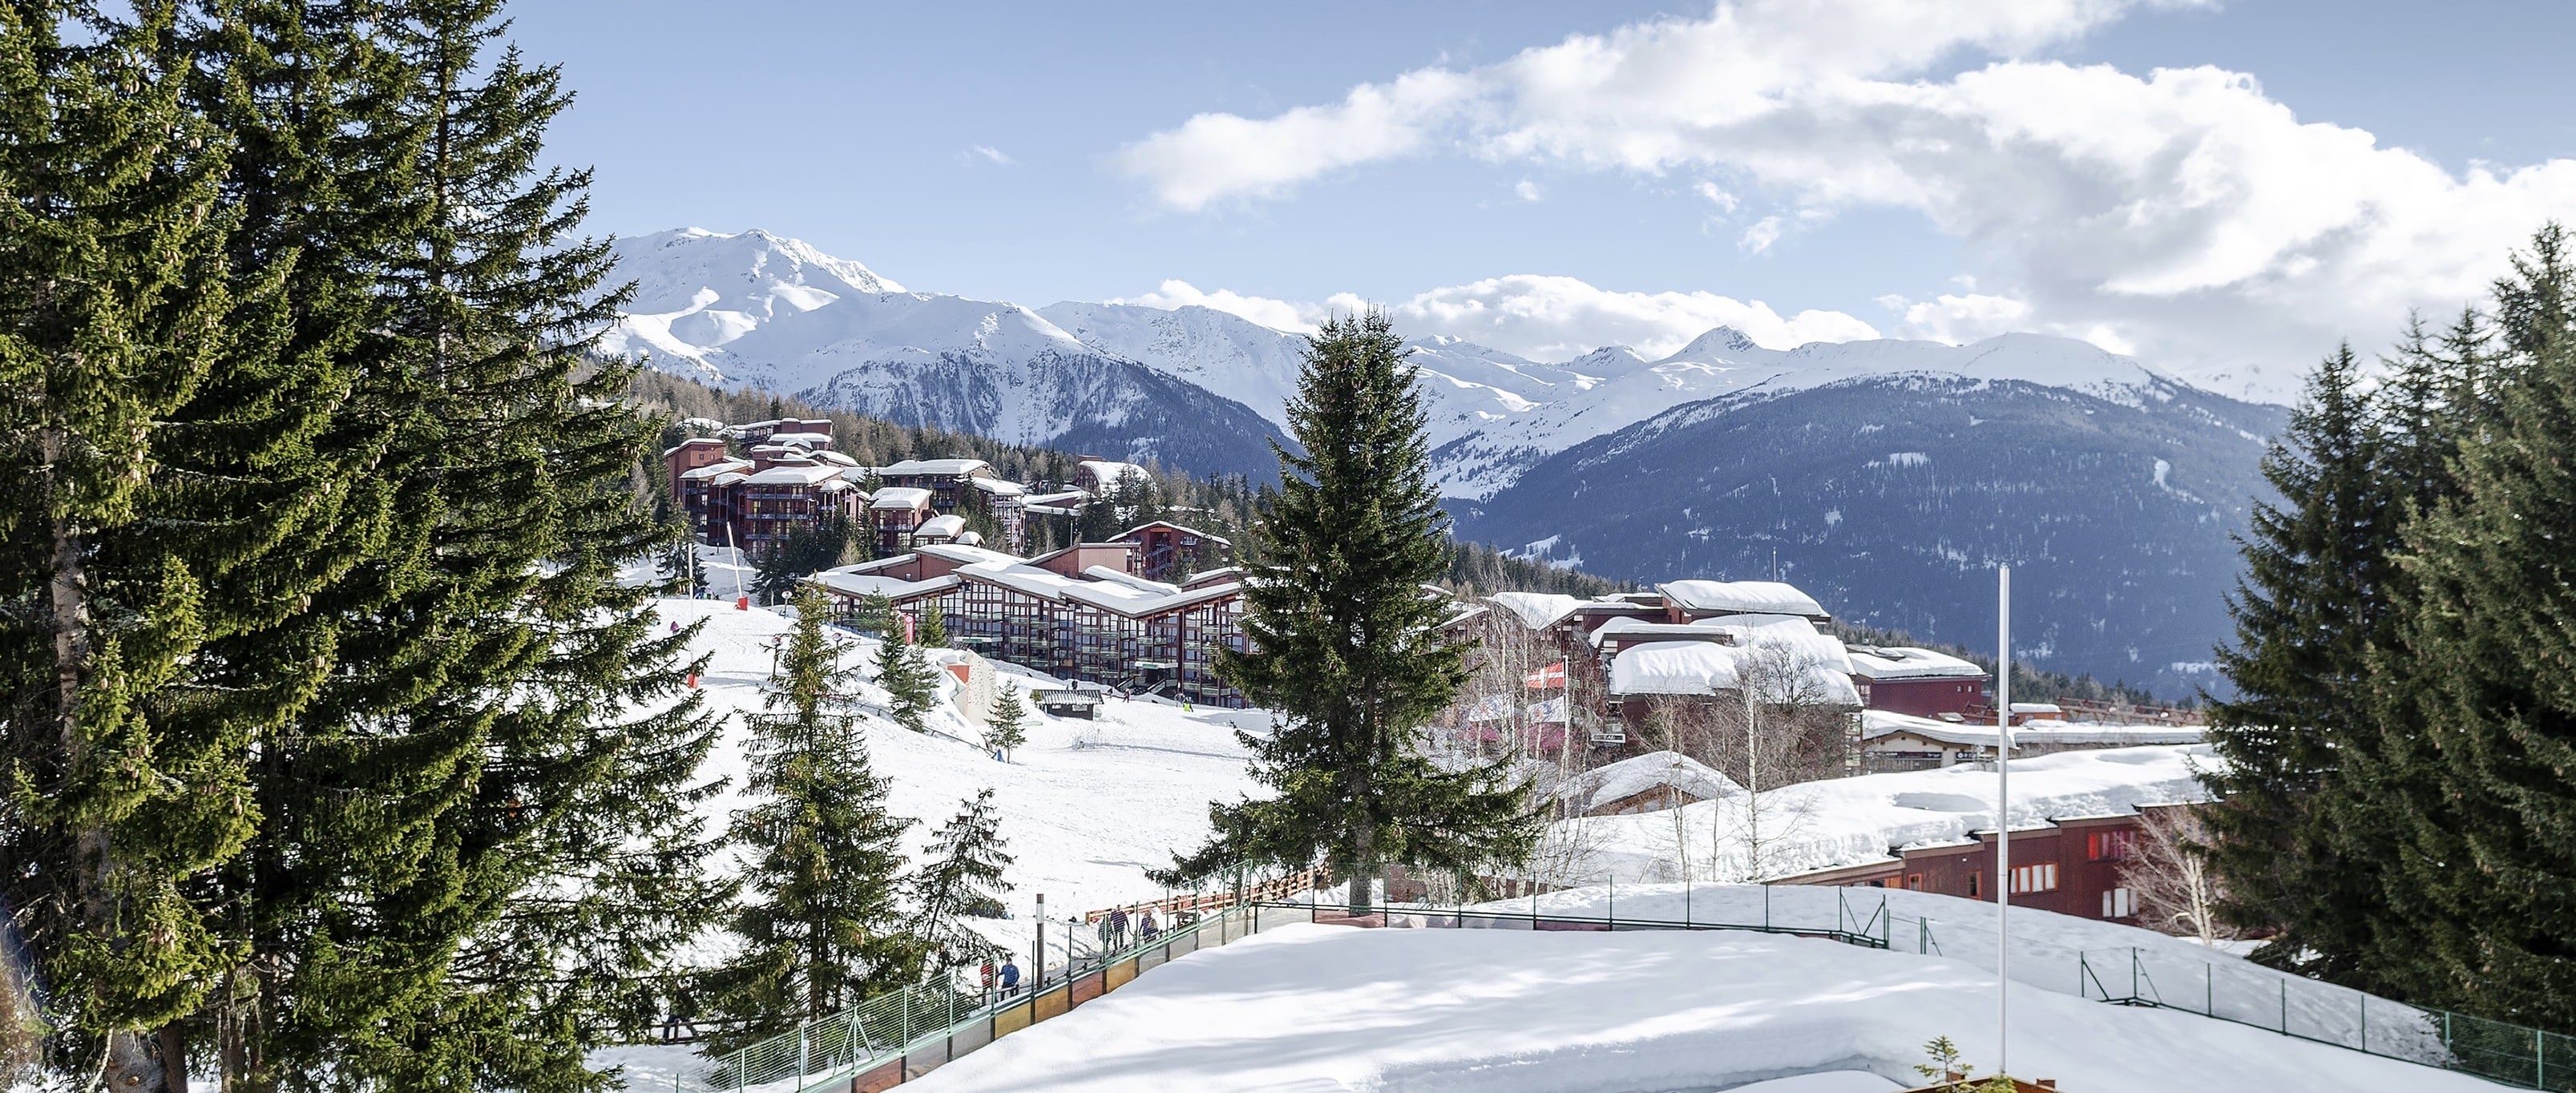 Ski-Immobilien in den Bergen kaufen